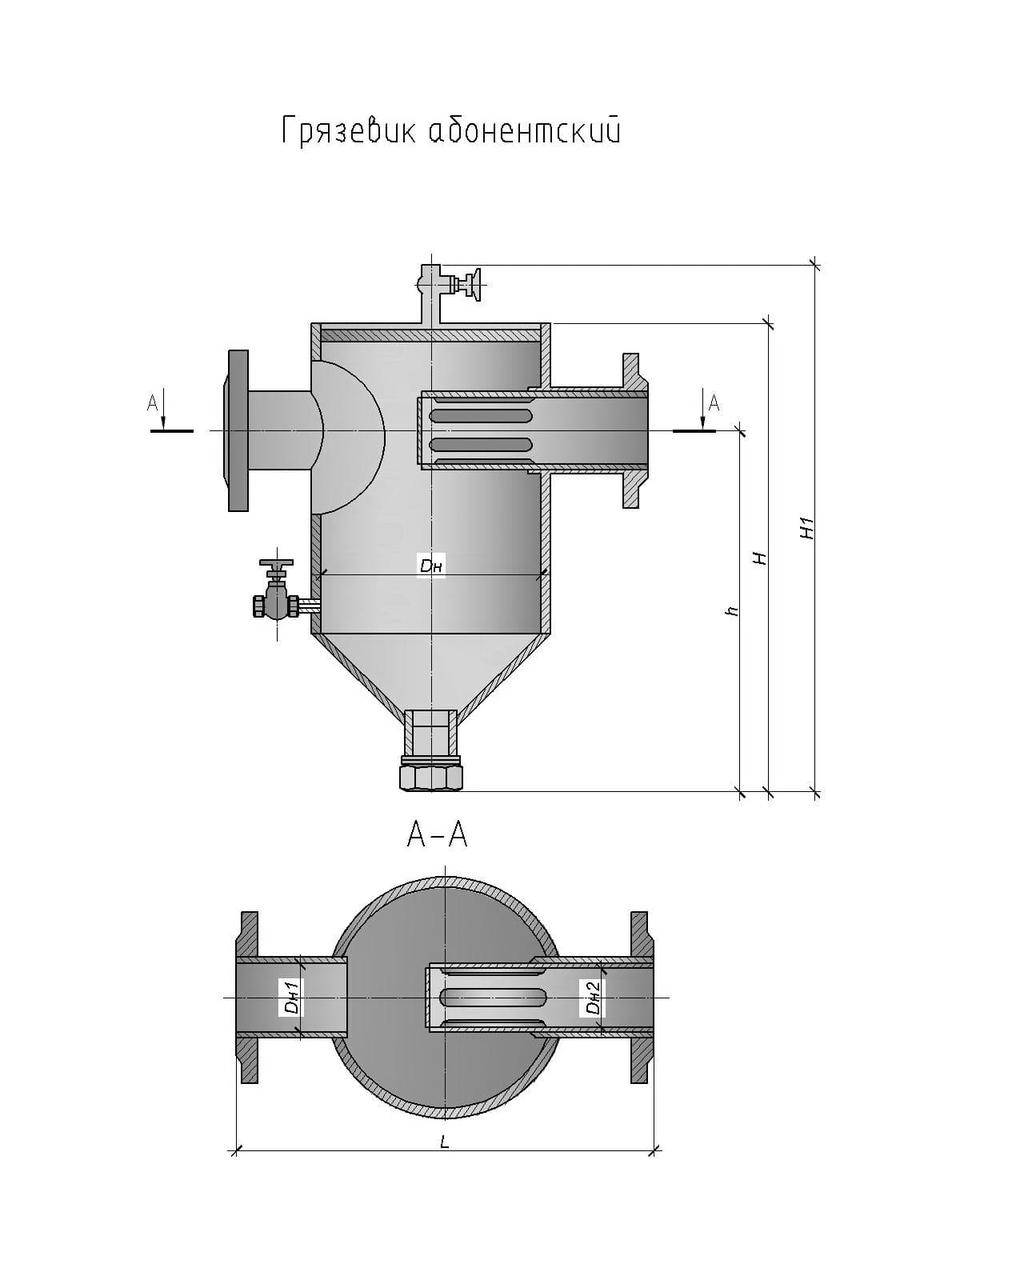 Грязевики для систем отопления – конструкция устройства и схема подключения - pechiexpert